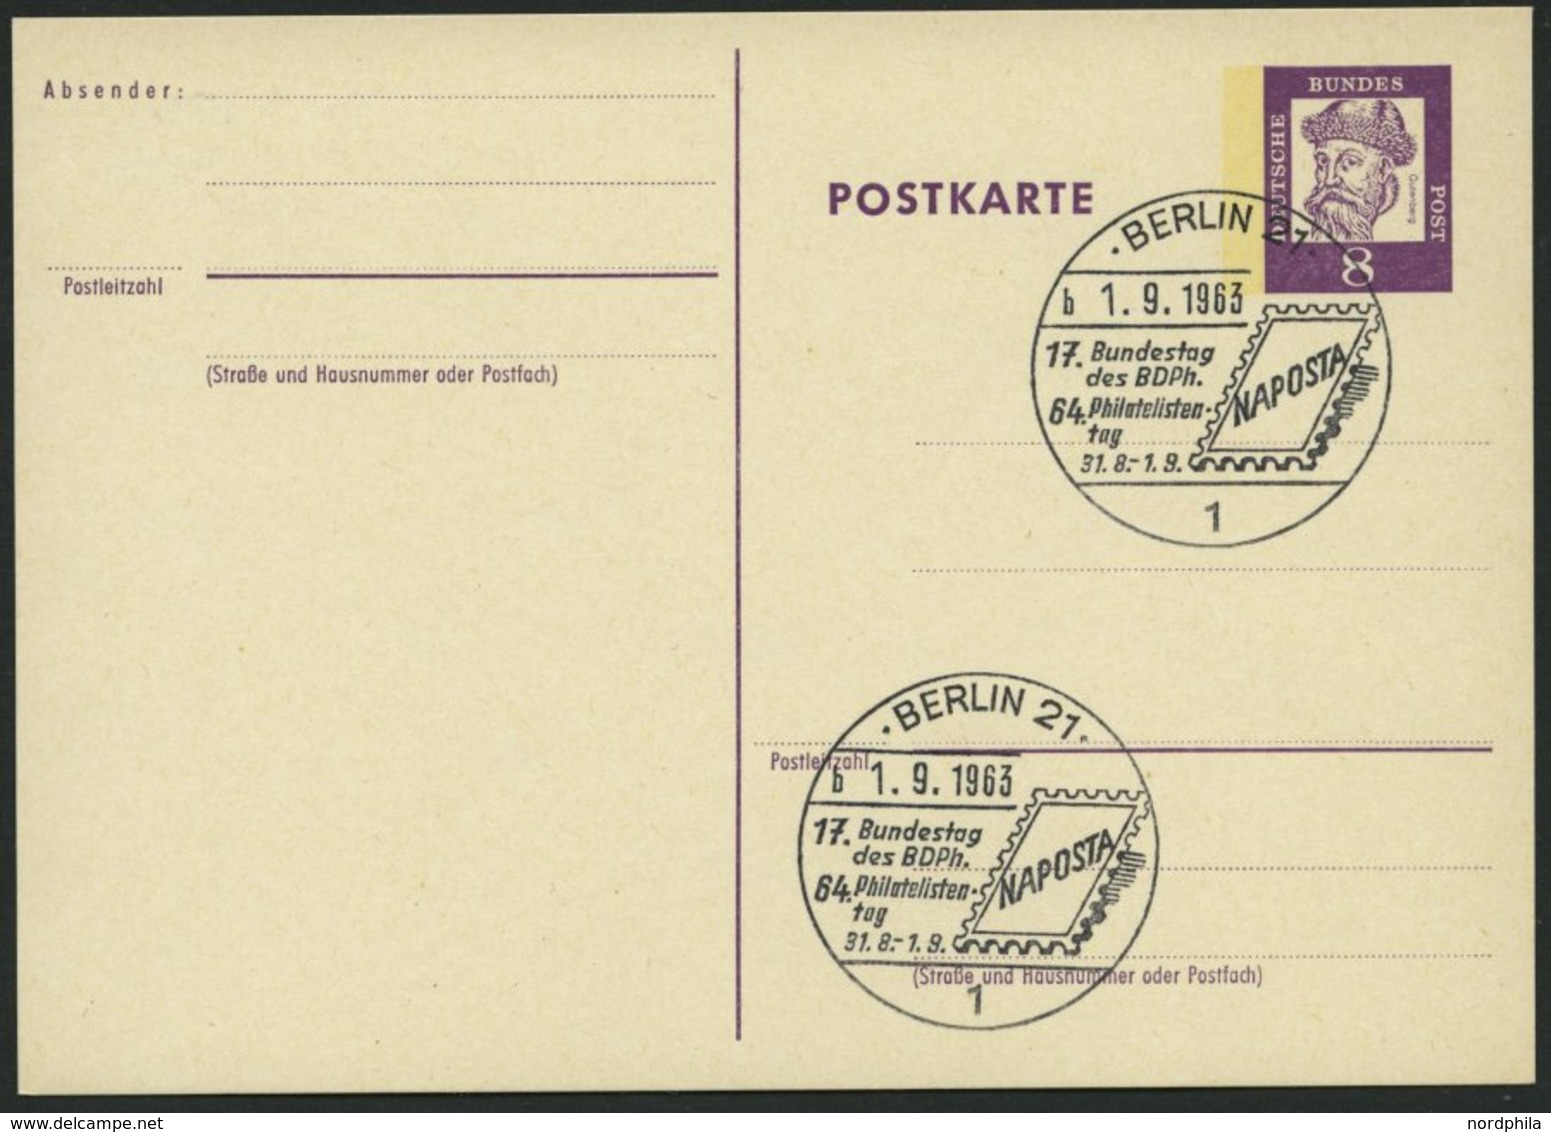 GANZSACHEN P 73 BRIEF, 1962, 8 Pf. Gutenberg, Postkarte In Grotesk-Schrift, Leer Gestempelt Mit Sonderstempel BERLIN 21  - Sammlungen